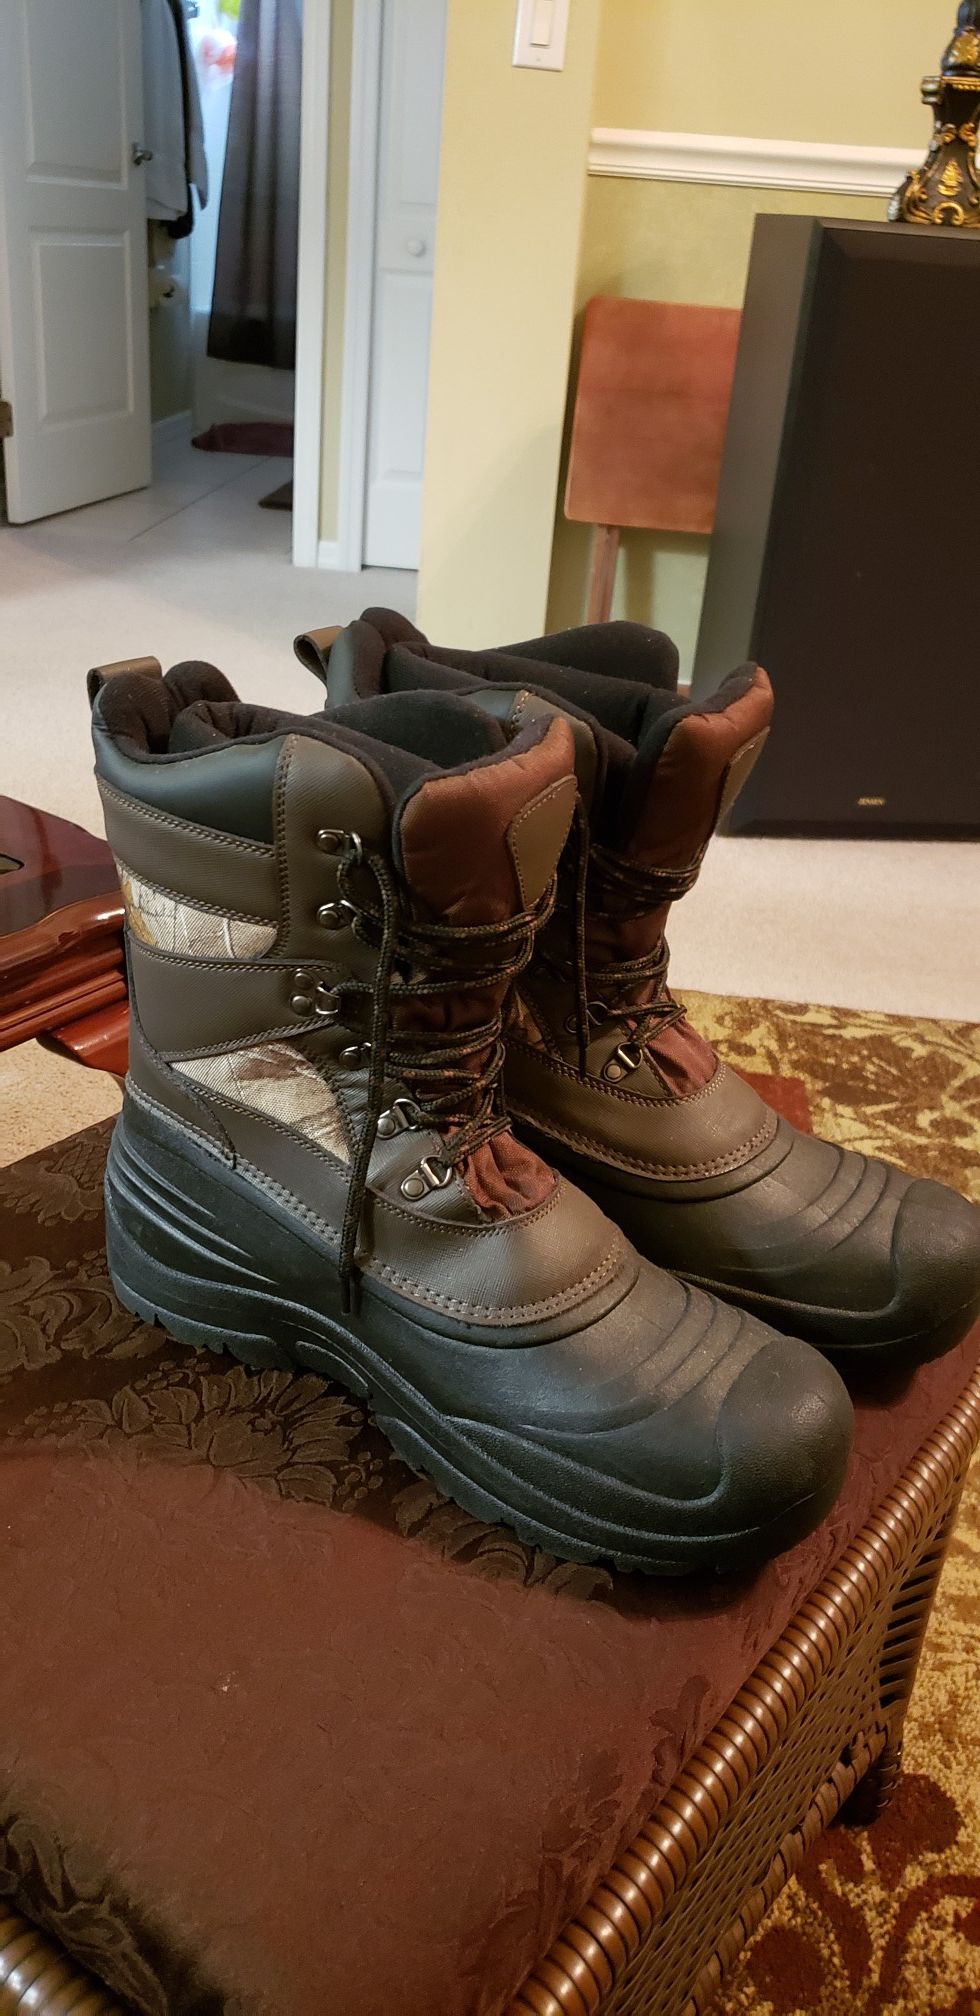 Ozark Trail snow/rain boots